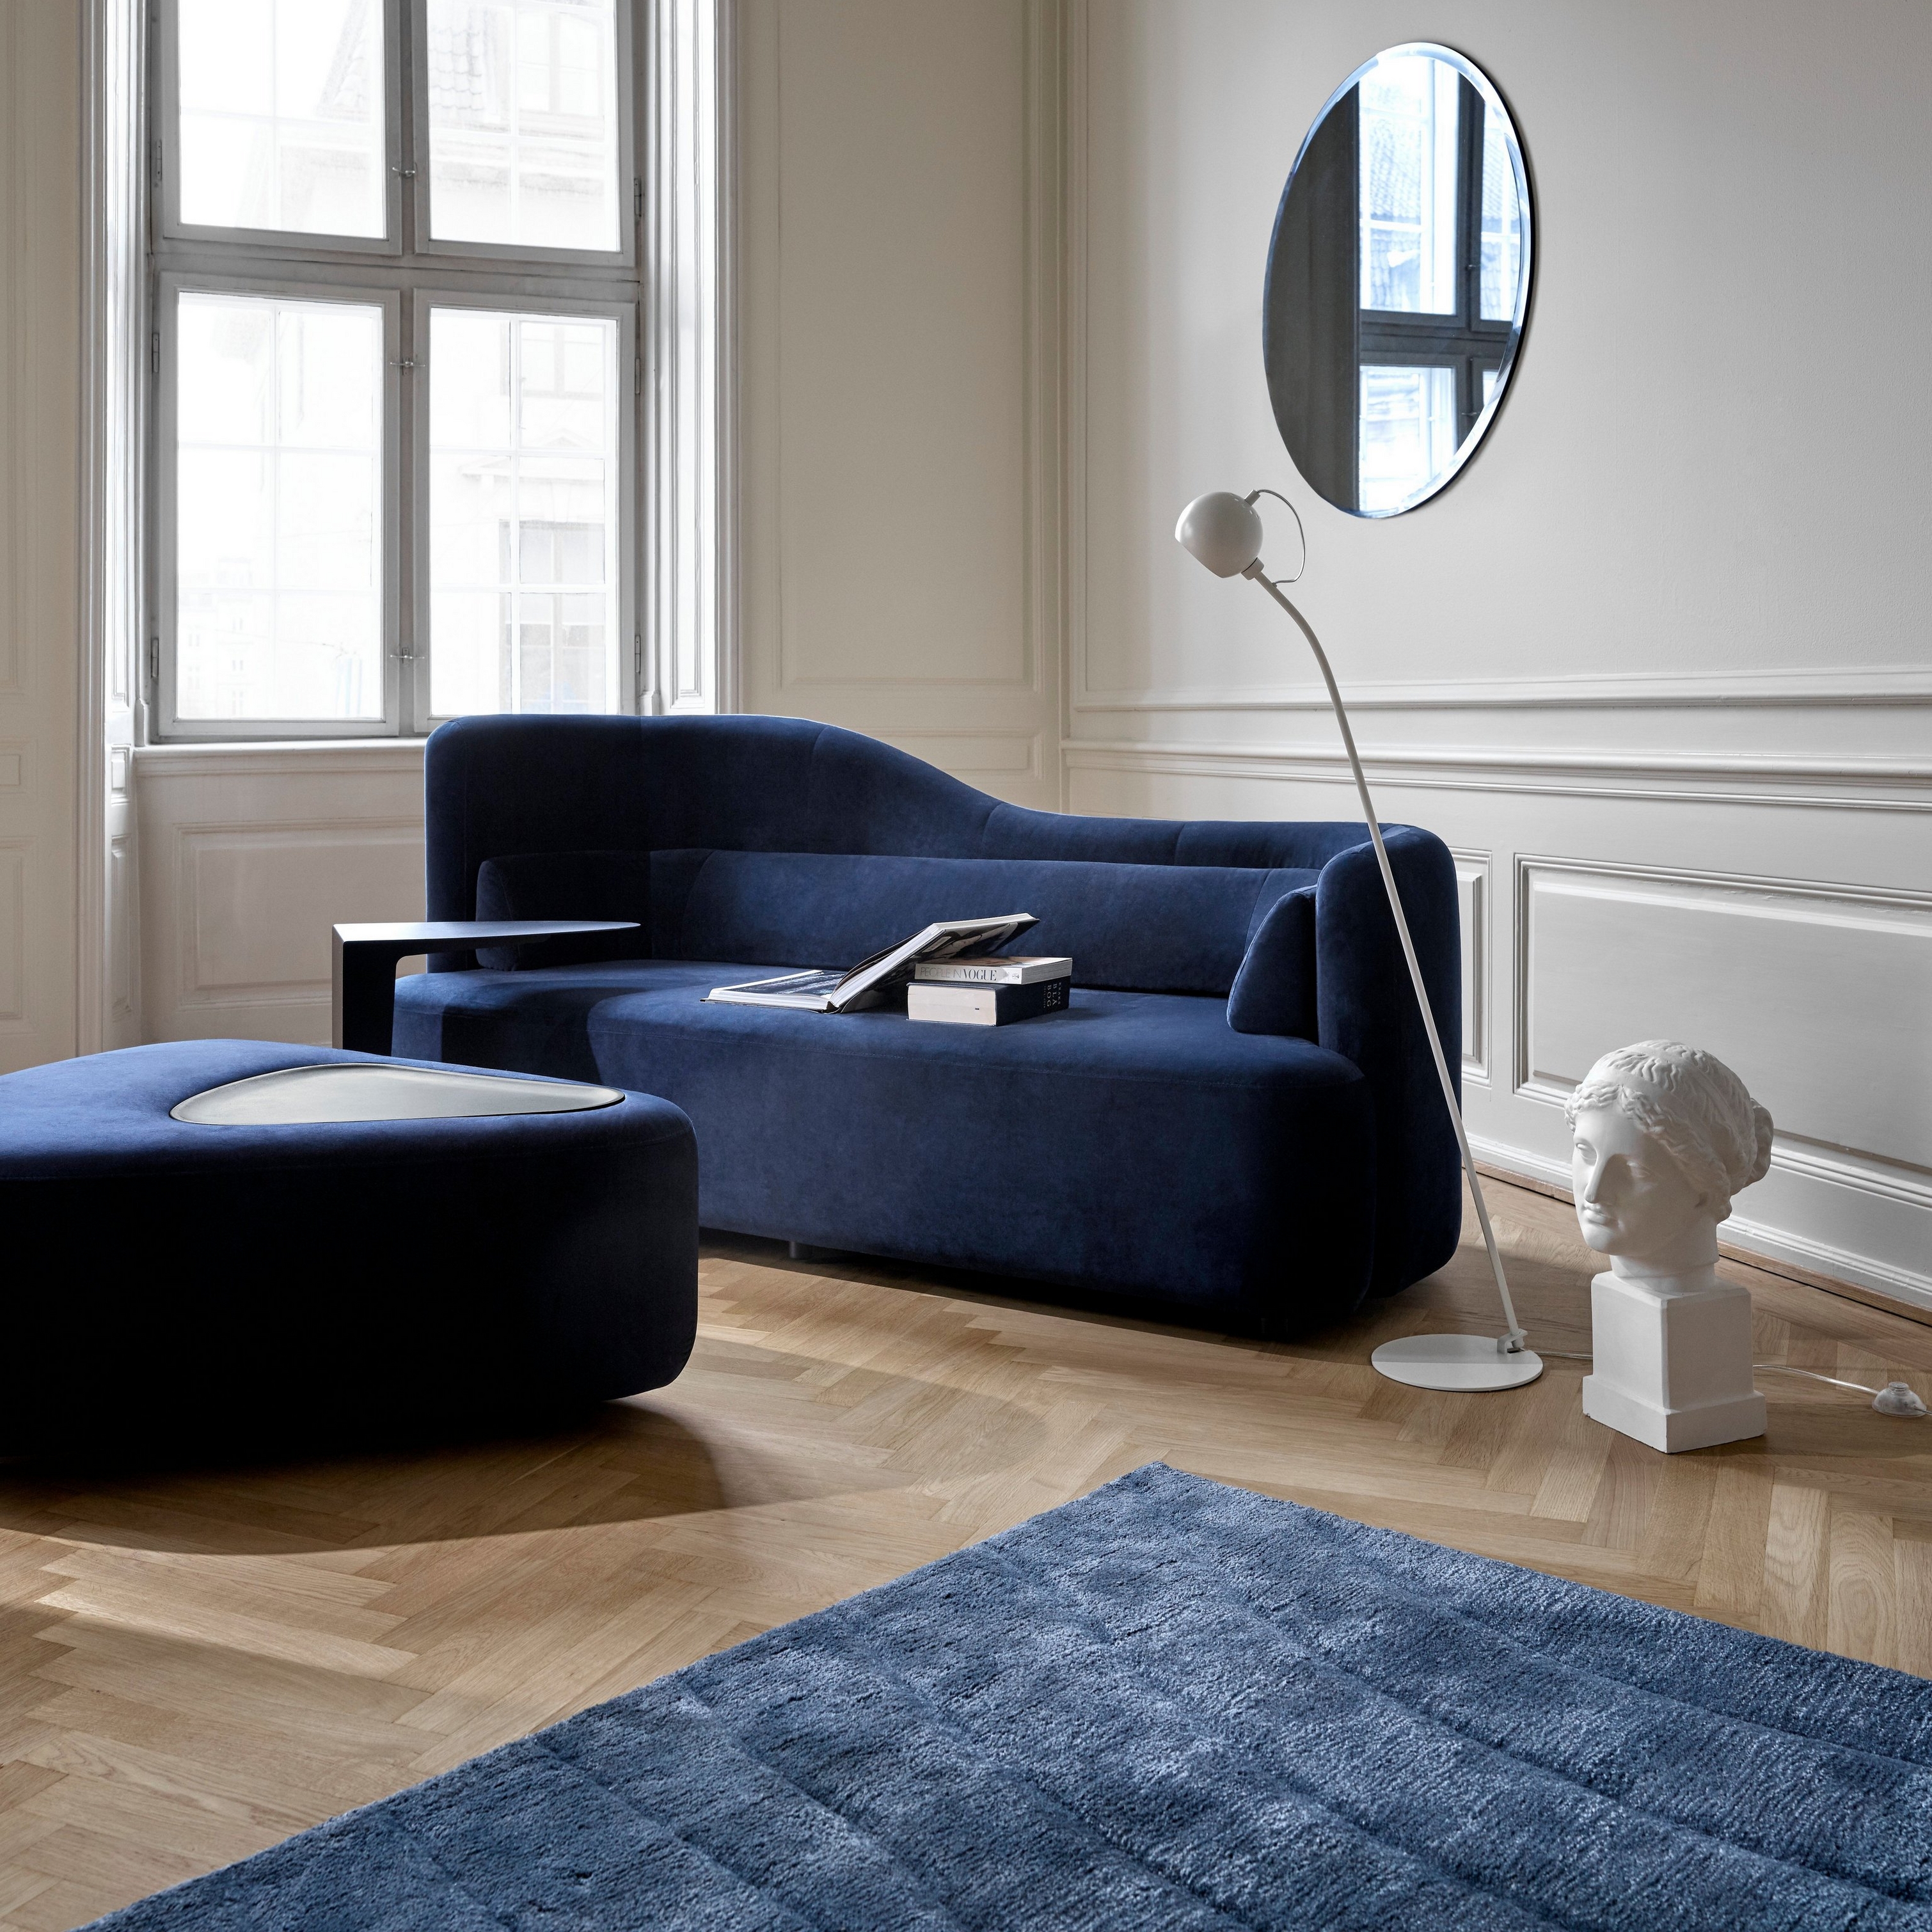 Sala de estar sofisticada com o sofá Ottawa e o apoio de pés Ottawa em Veludo azul